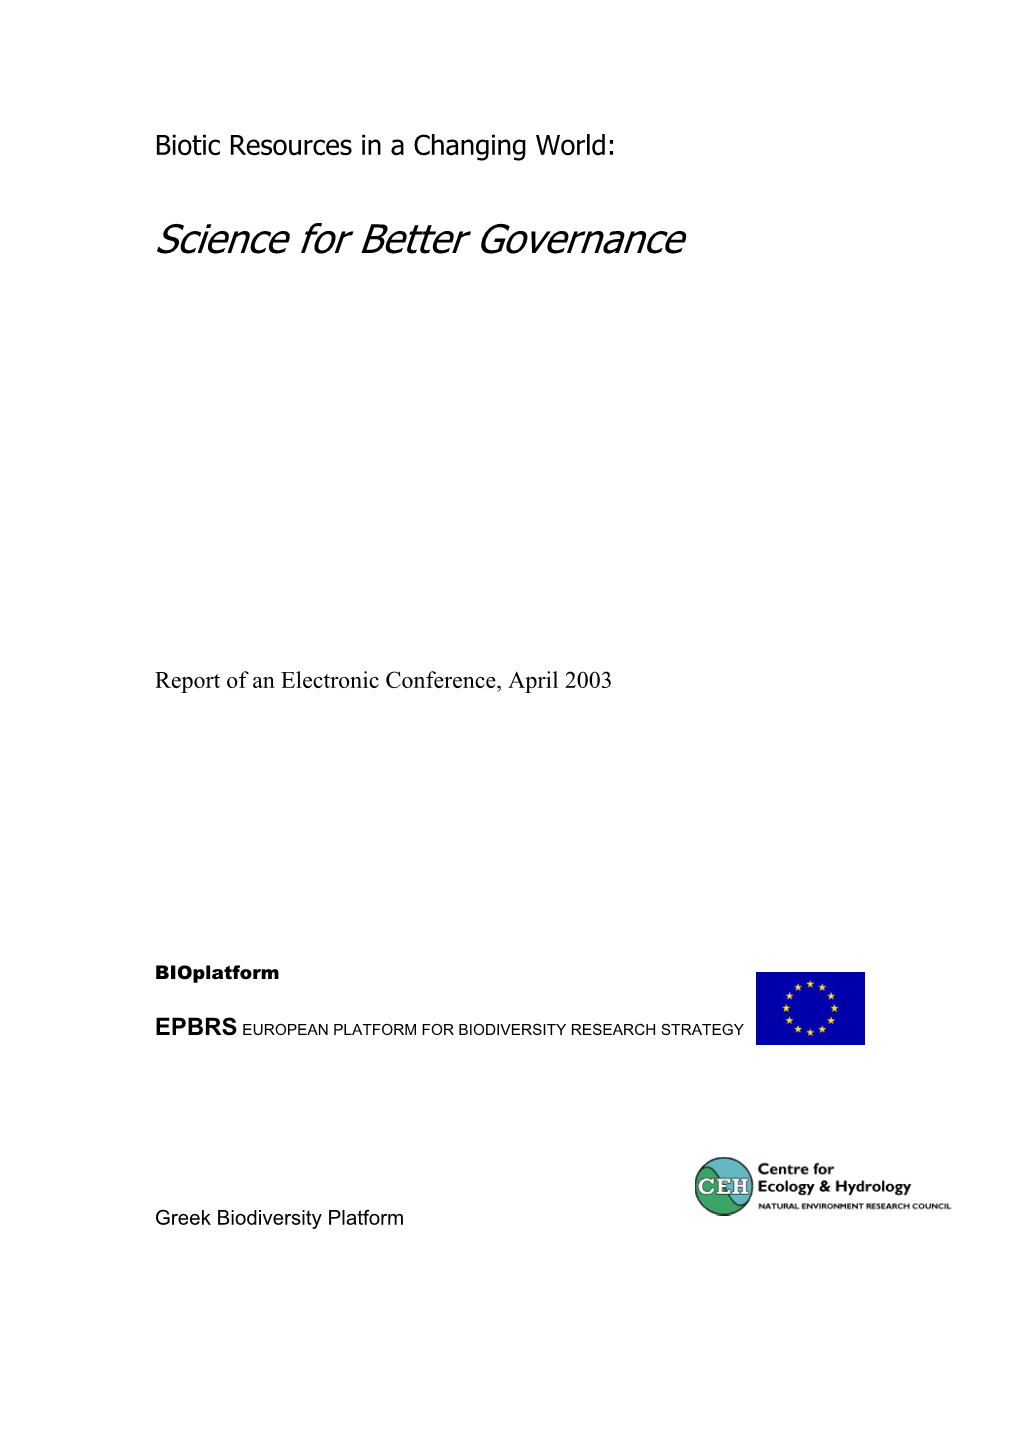 Science for Better Governance